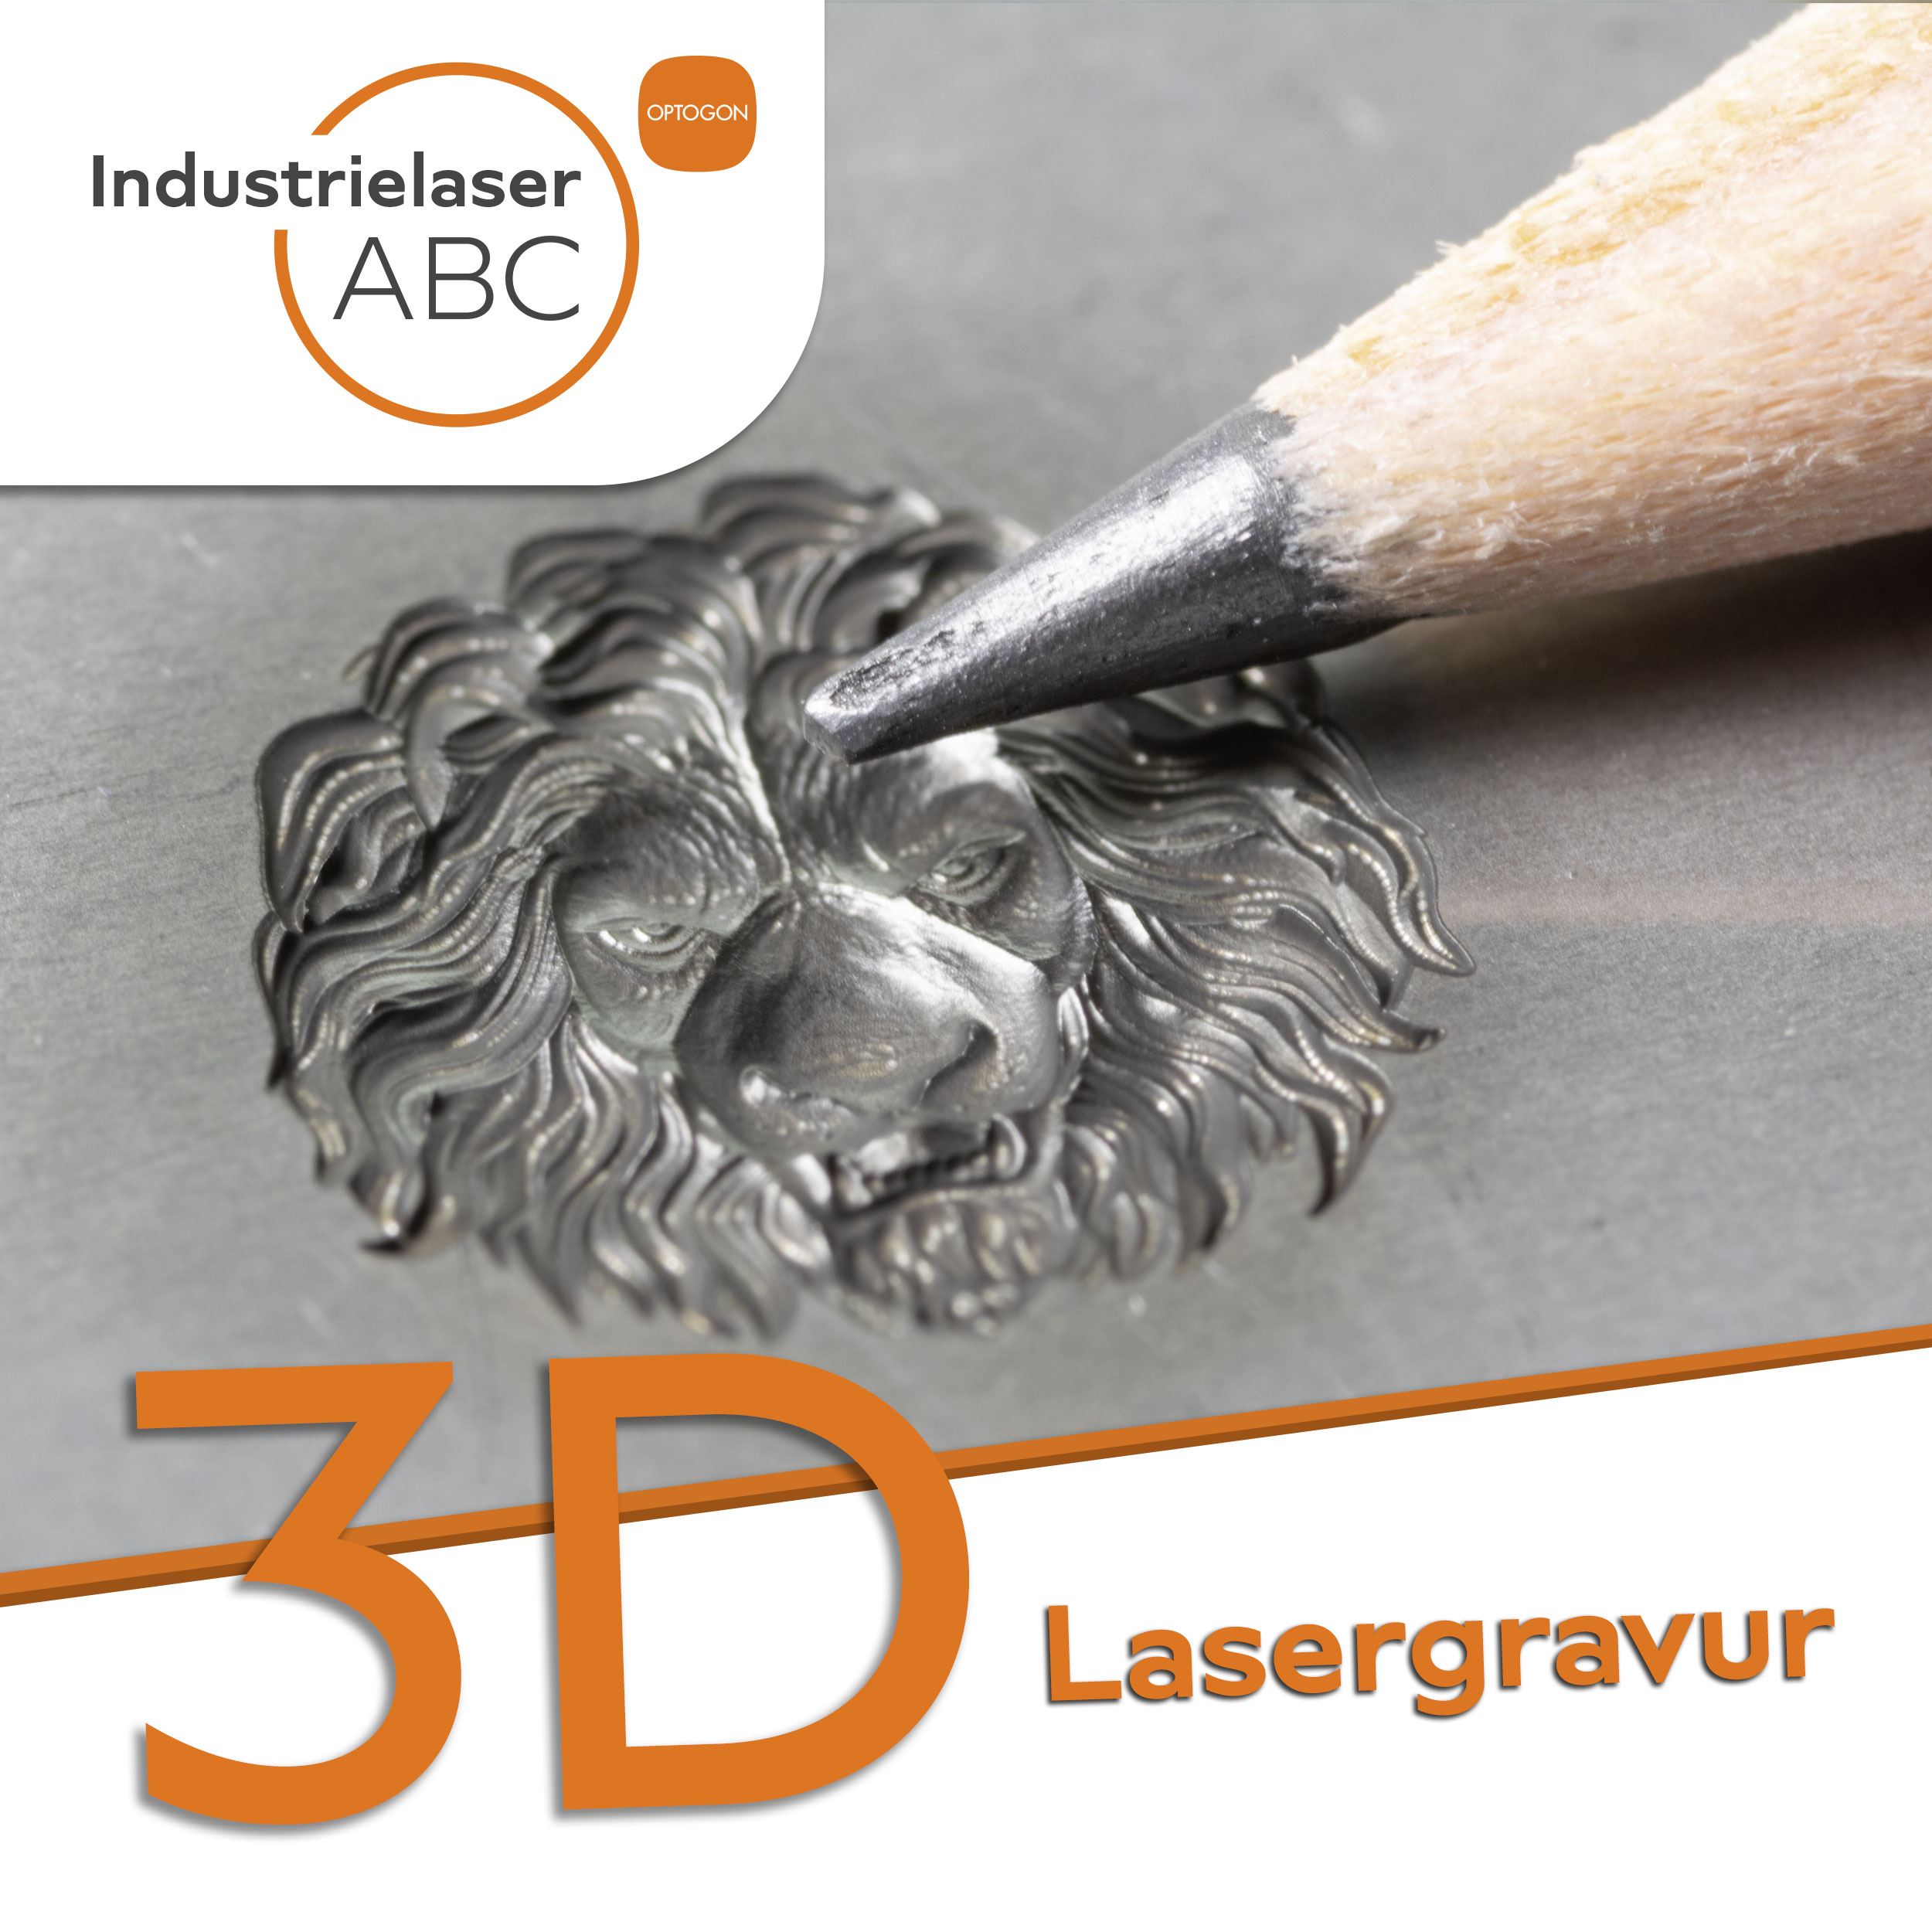 Industrielaser 3D Lasergravur